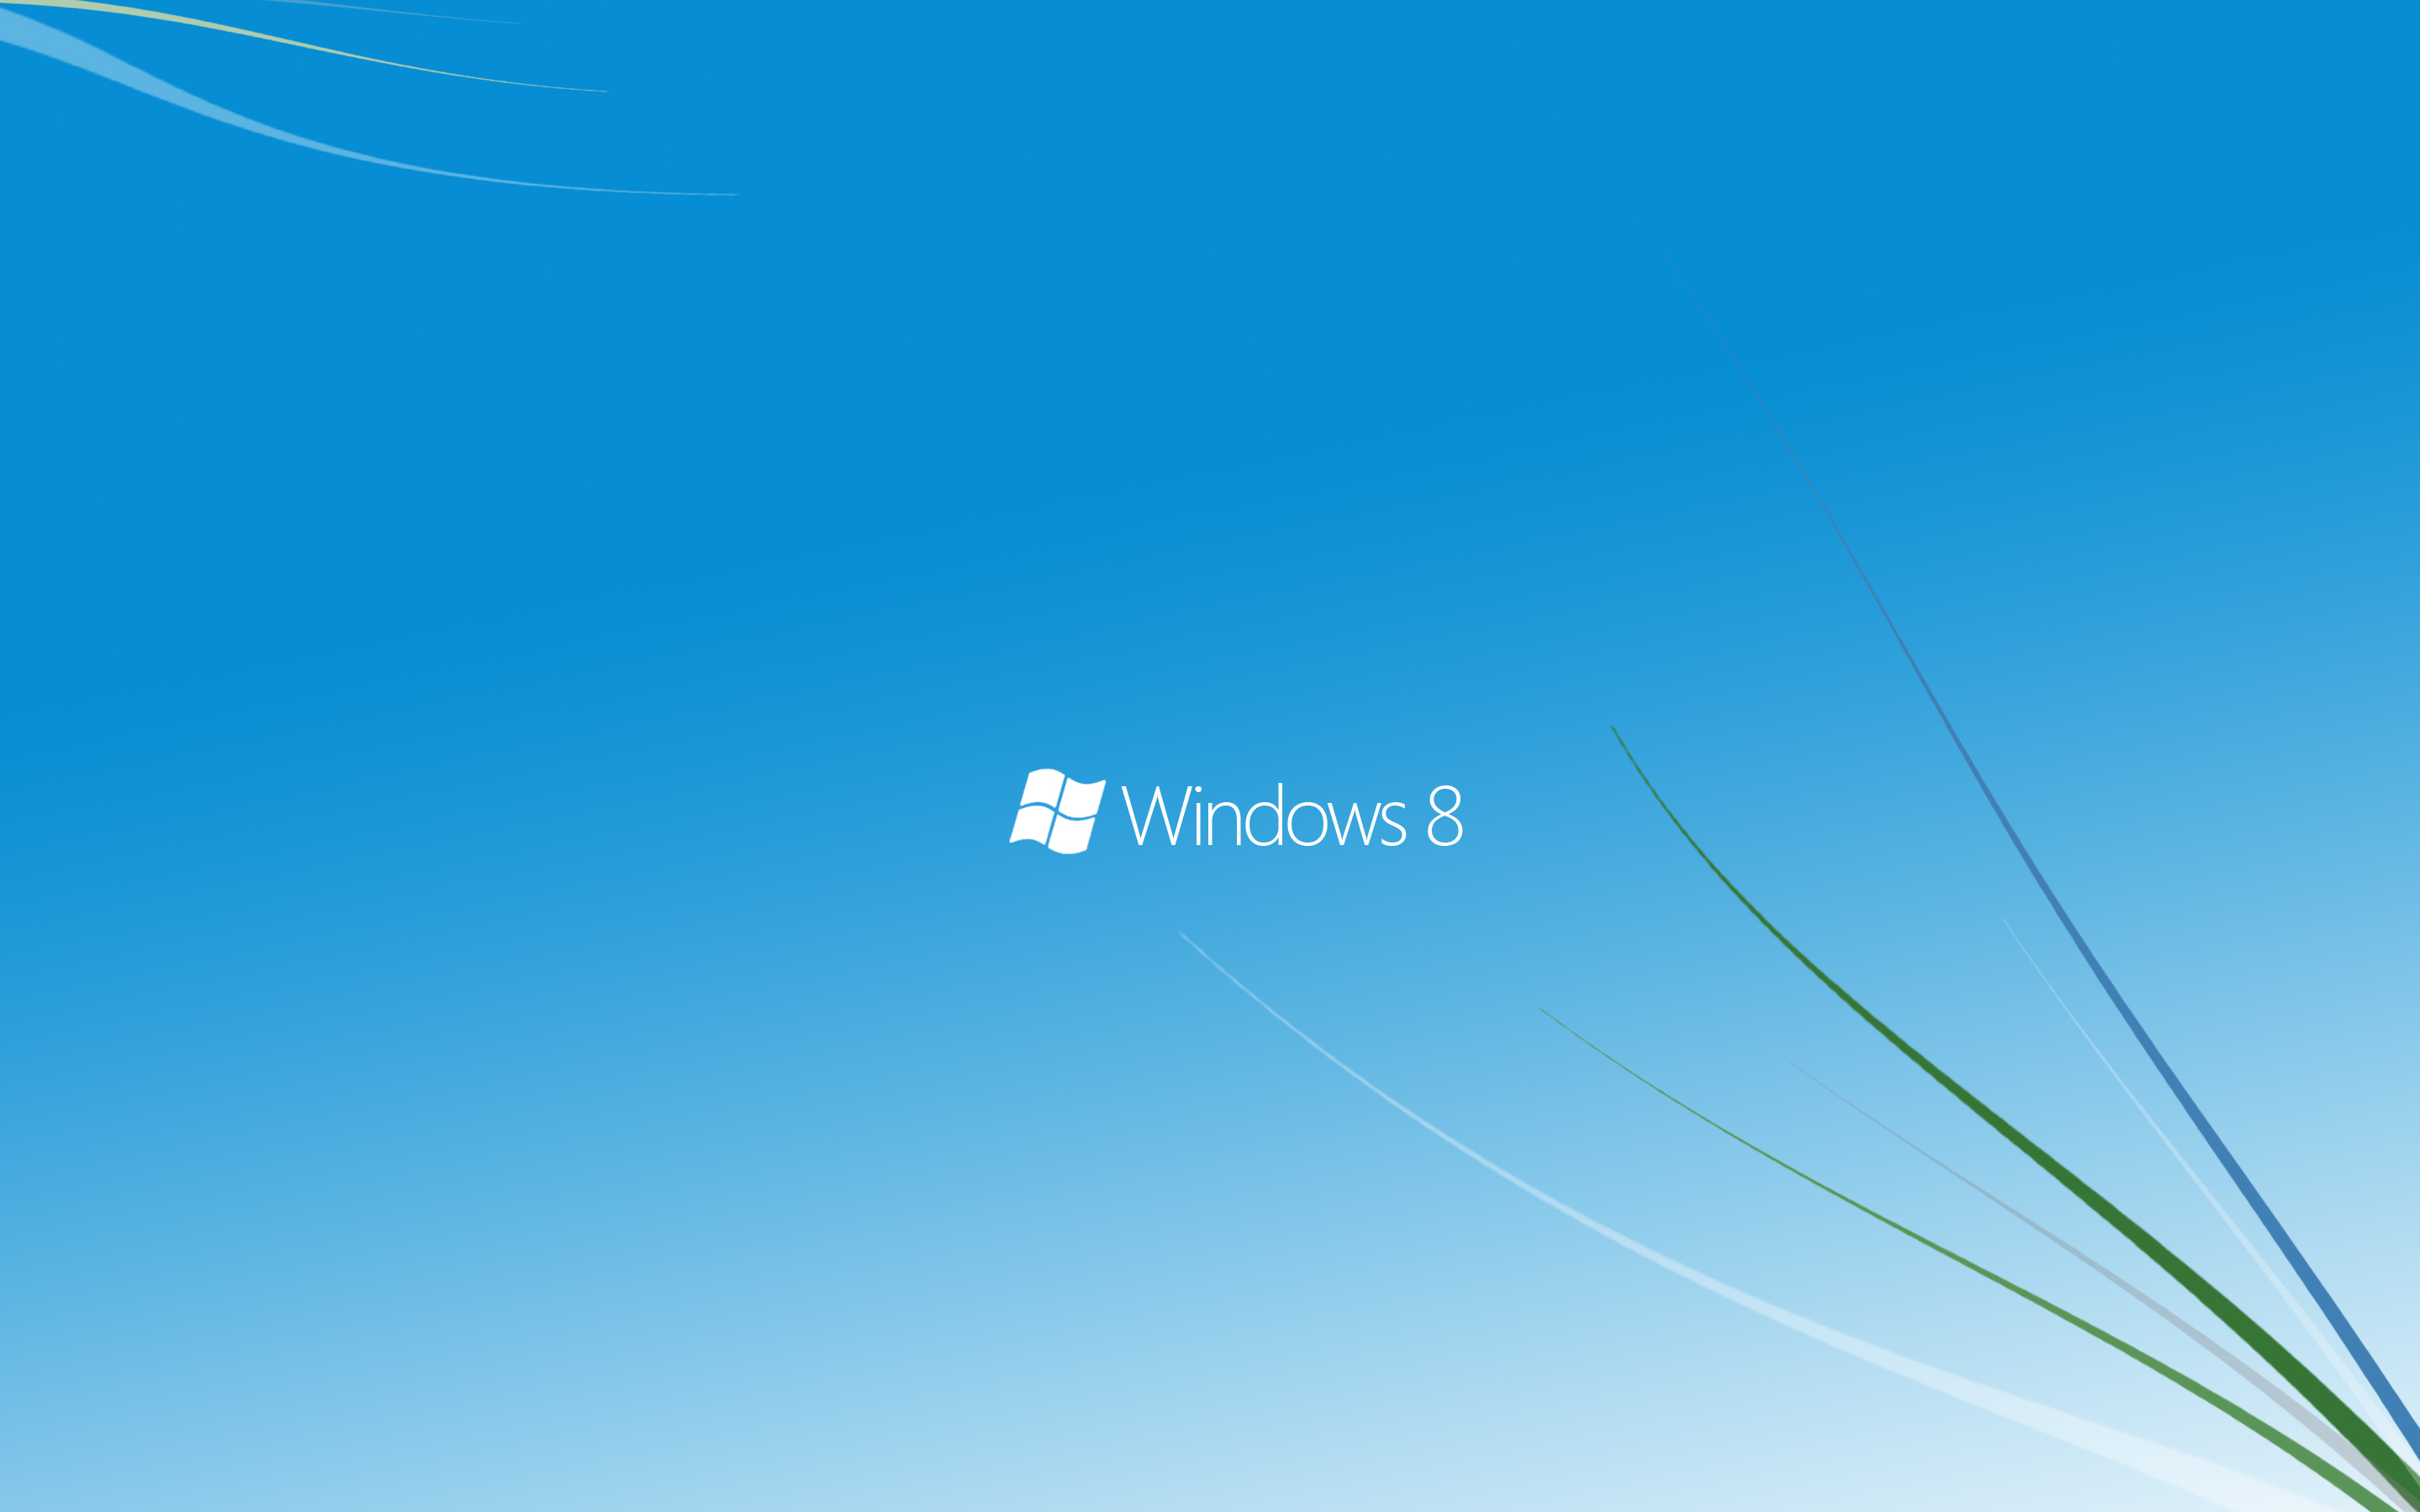 Tìm kiếm một hình nền đẹp cho máy tính của bạn? Hãy truy cập ngay vào hình nền Windows 8 để khám phá những tác phẩm nghệ thuật đầy màu sắc và tinh tế. Hãy tải về ngay để cảm nhận sự trải nghiệm tuyệt vời của hình nền này trên máy tính của bạn!